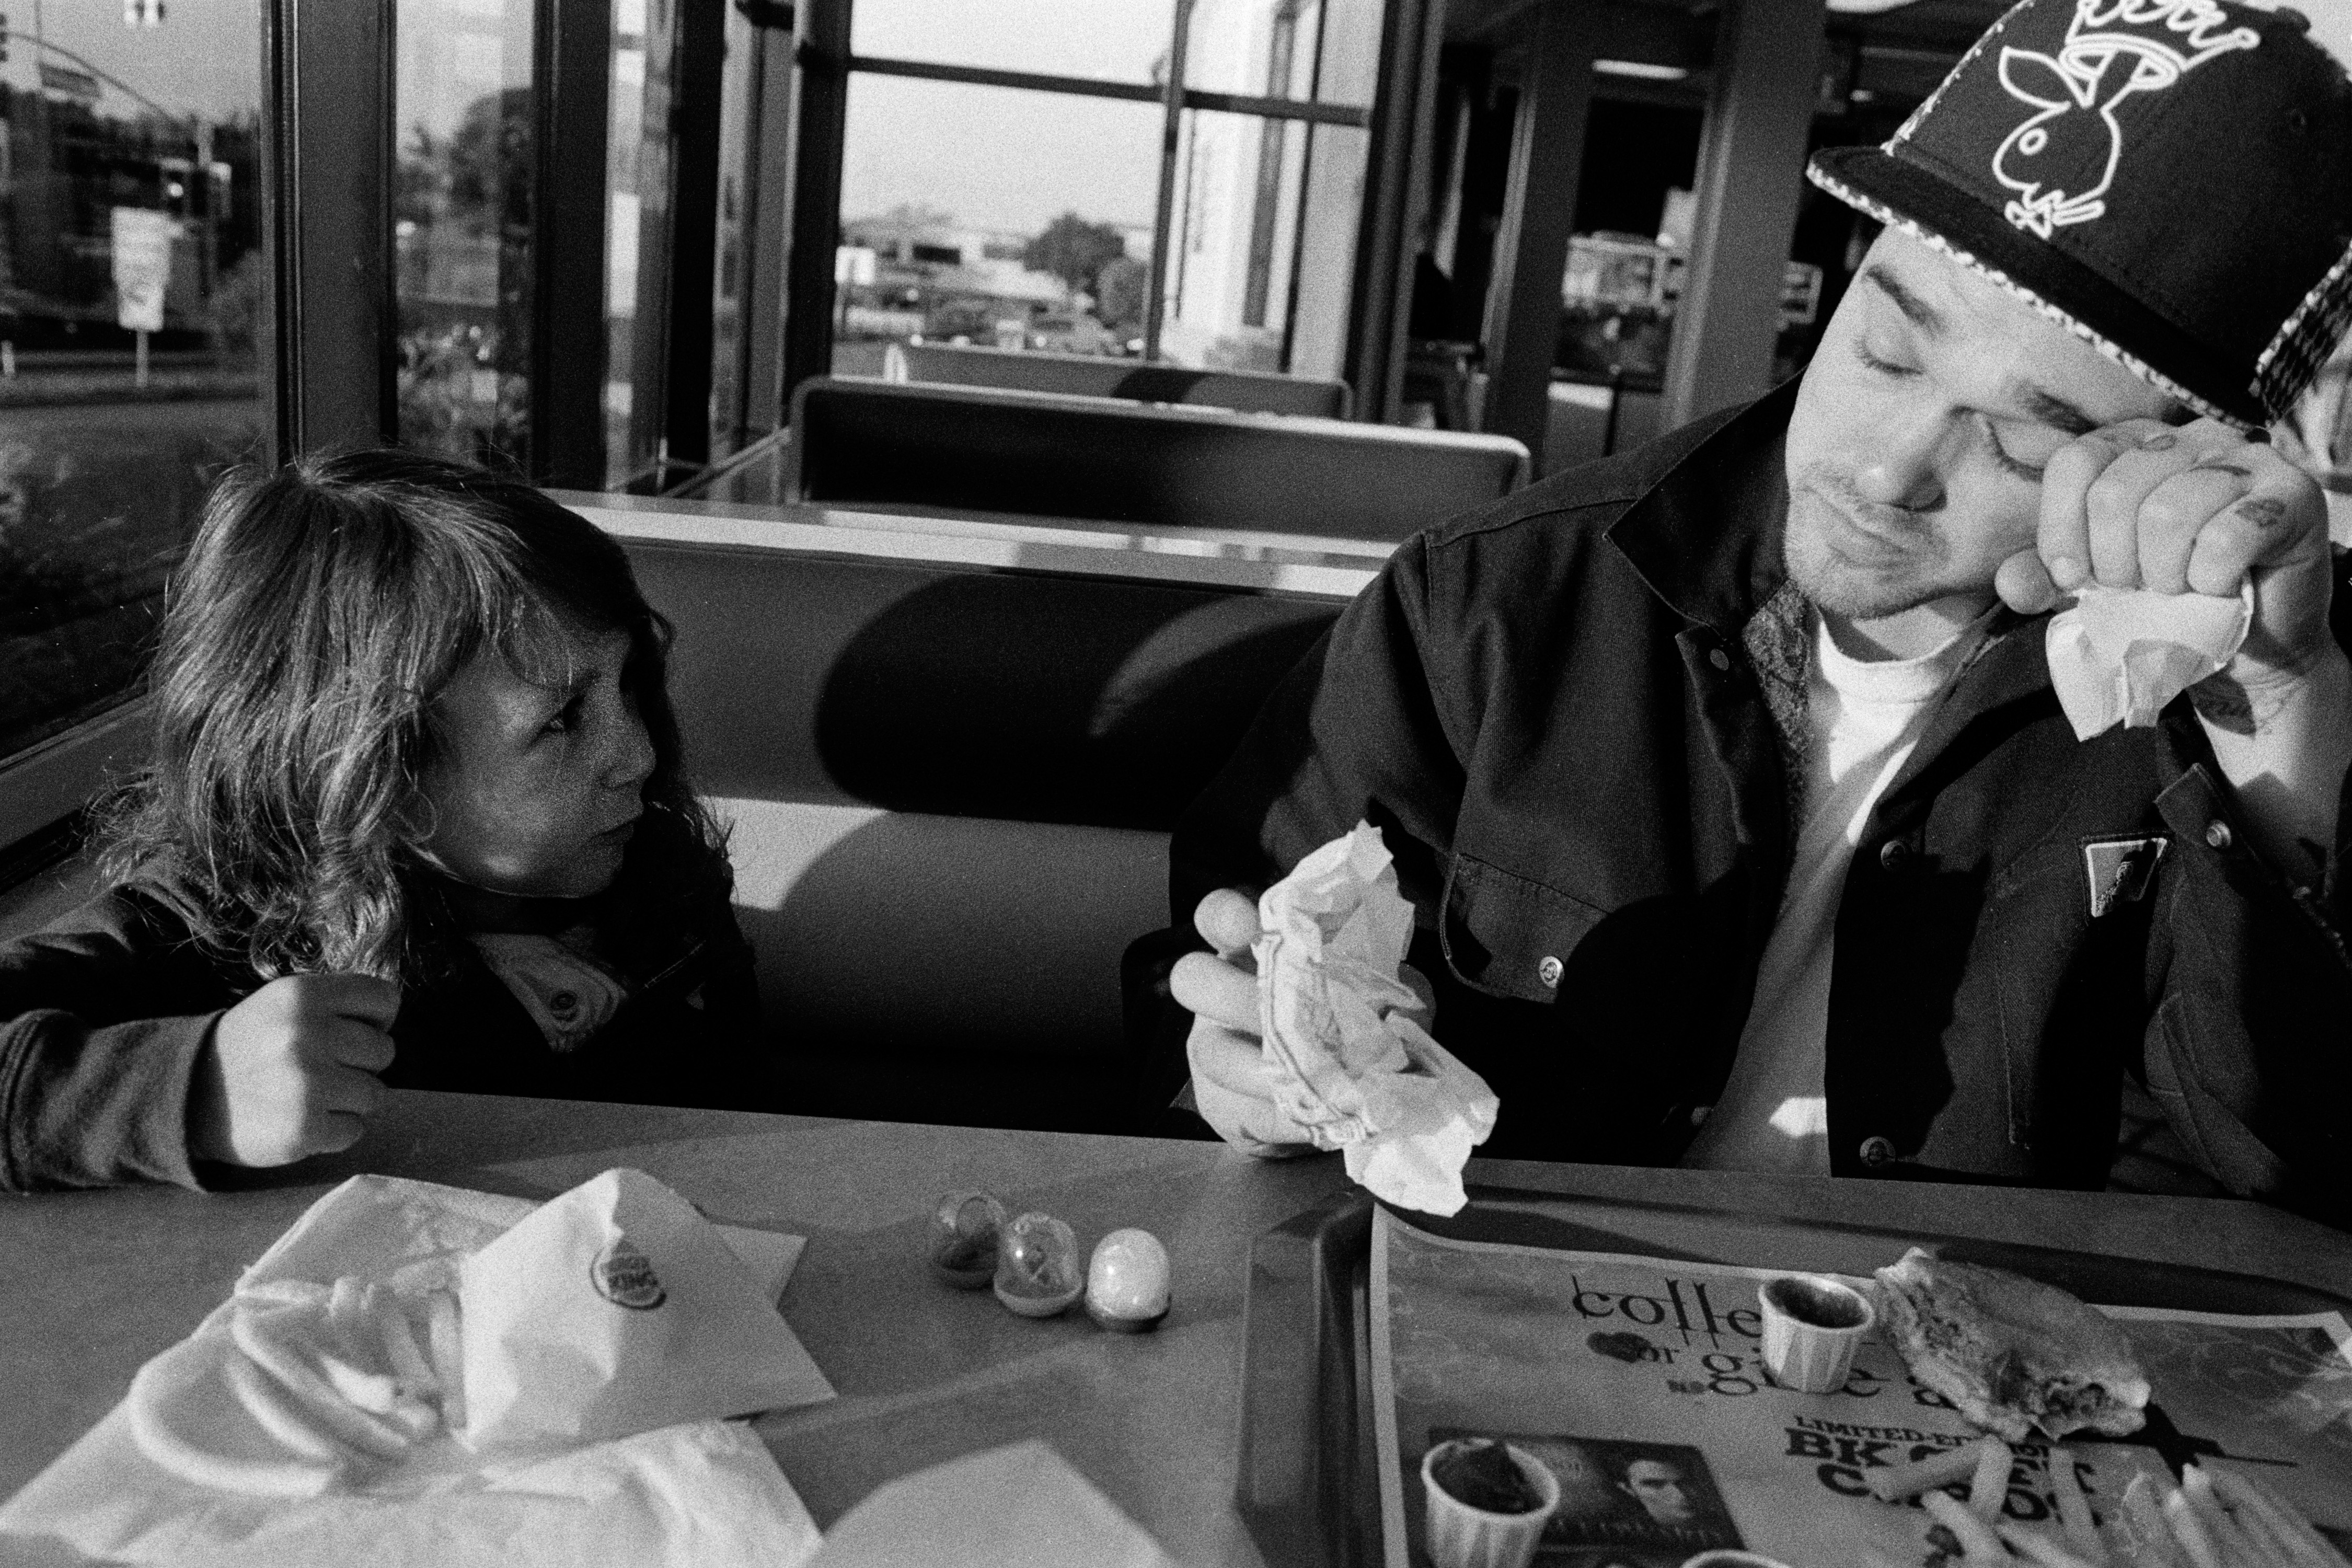 Ed And Aurora At Burger King. Seaside, 2009.